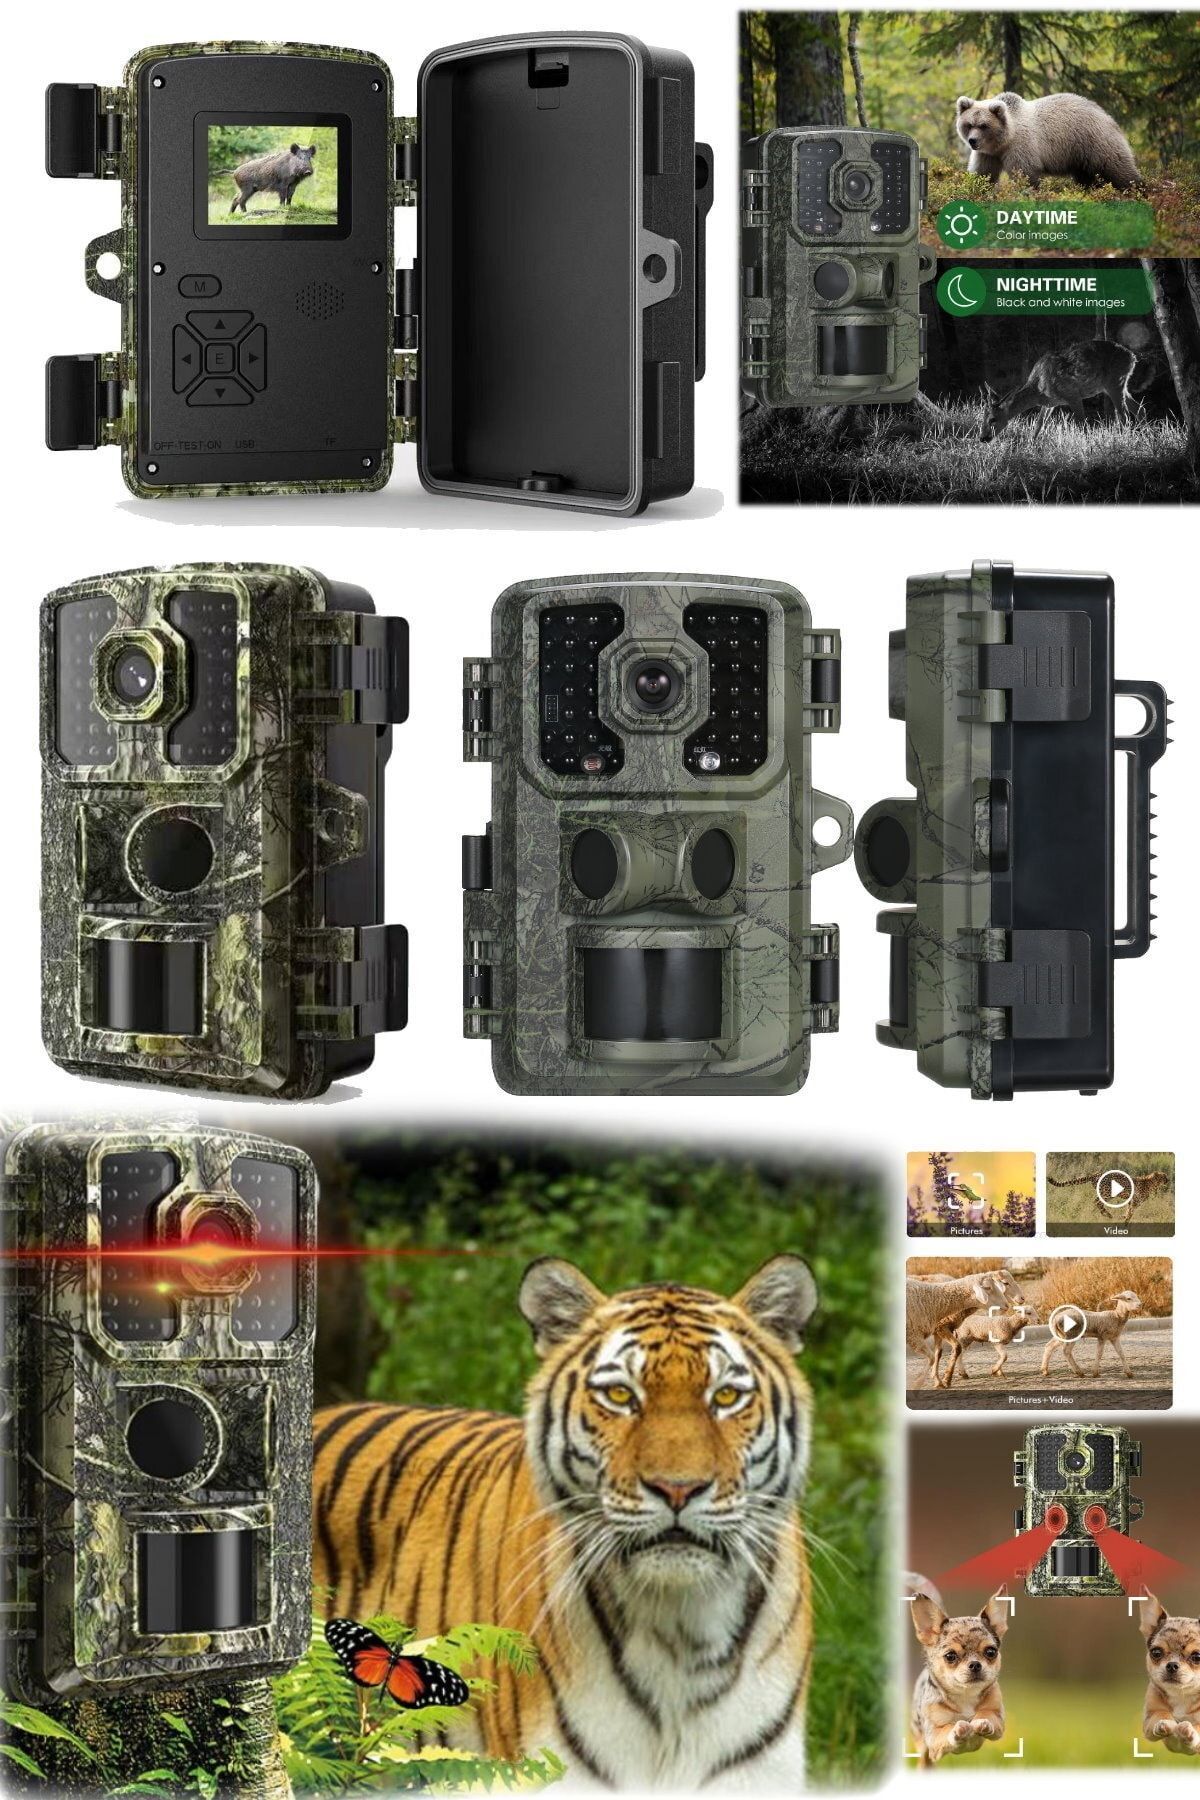 Utelips Yaban Hayatı Izleme Için Hd Kamera - Kızılötesi Gece Görüşü Hareket Algılama 16mp Pet Takip Kamerası